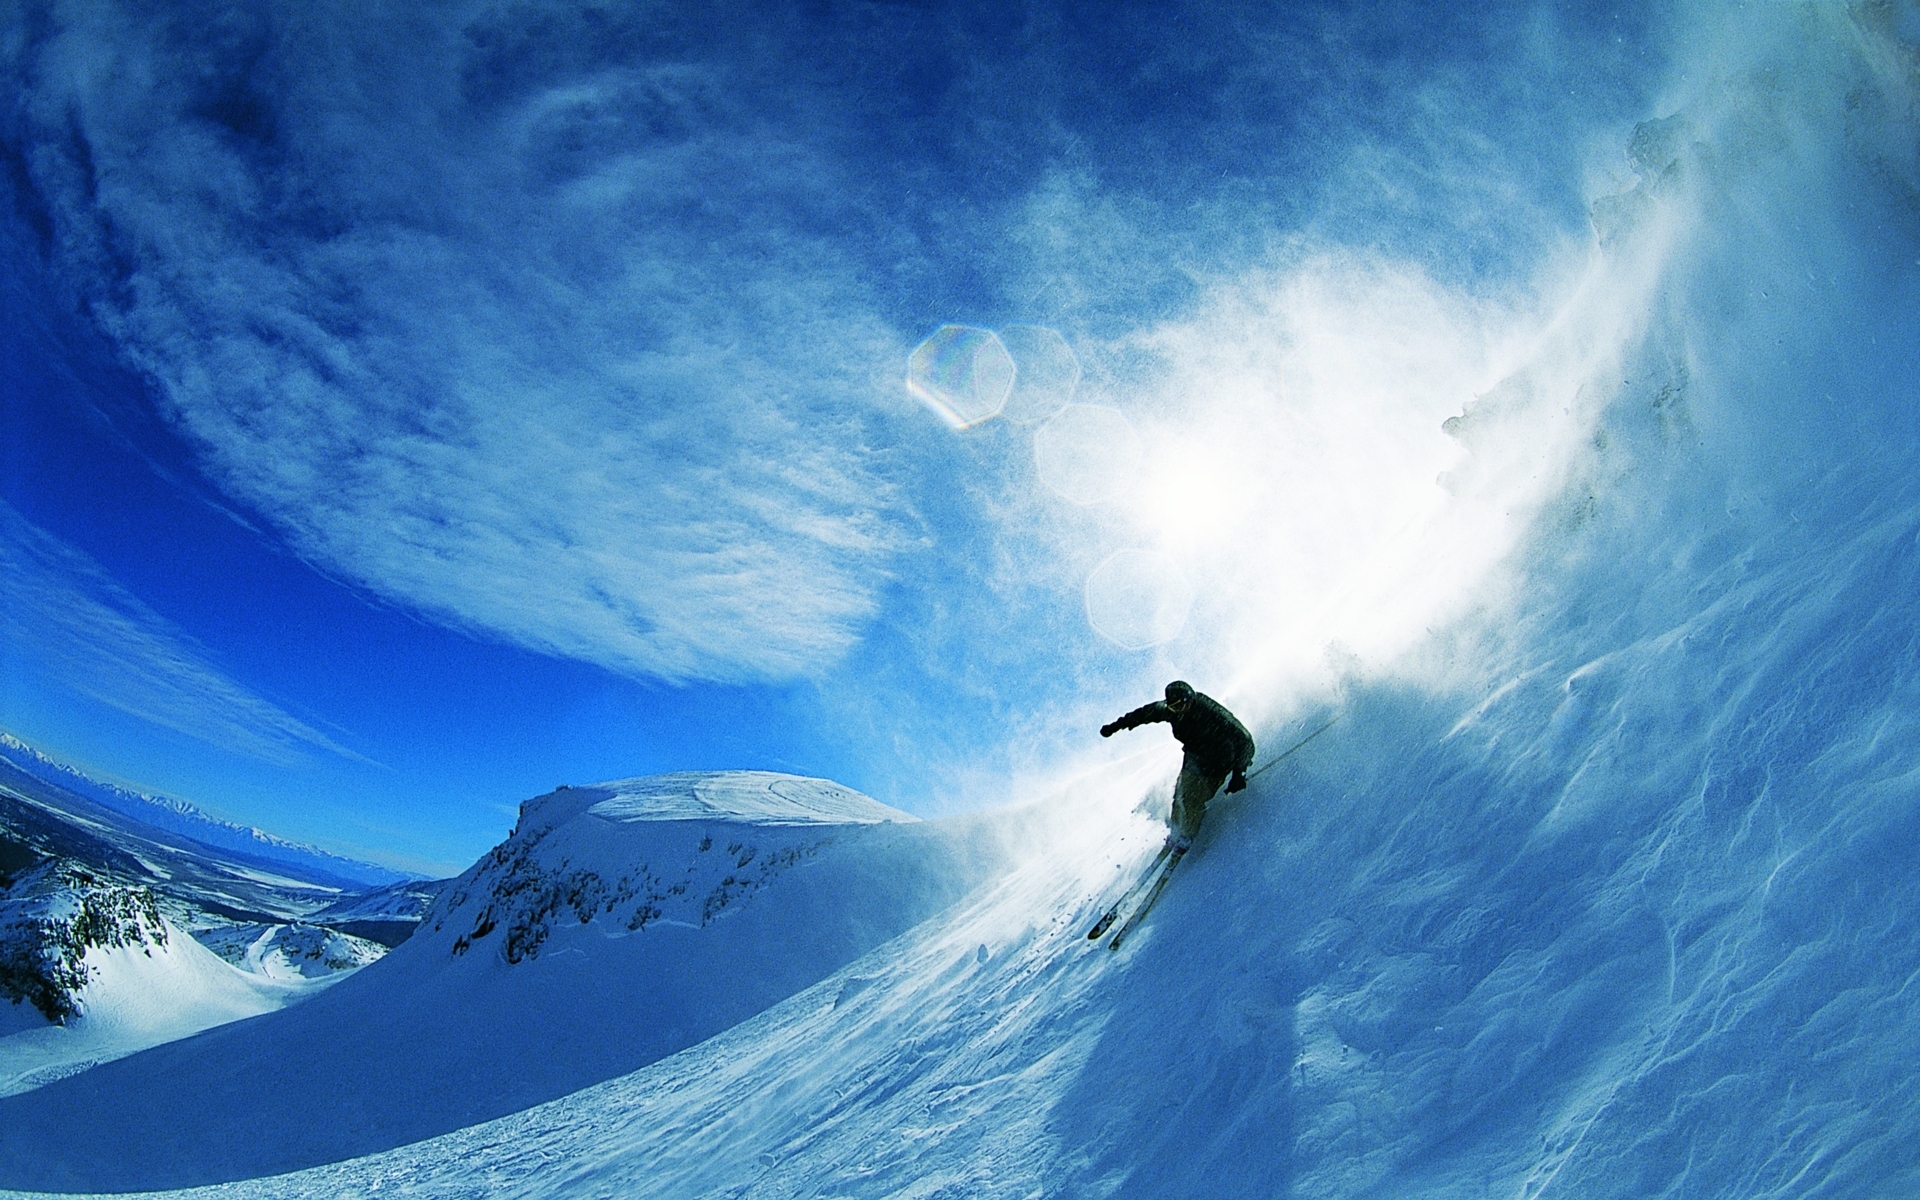 Скачать обои бесплатно Снег, Горы, Спорт, Зима картинка на рабочий стол ПК